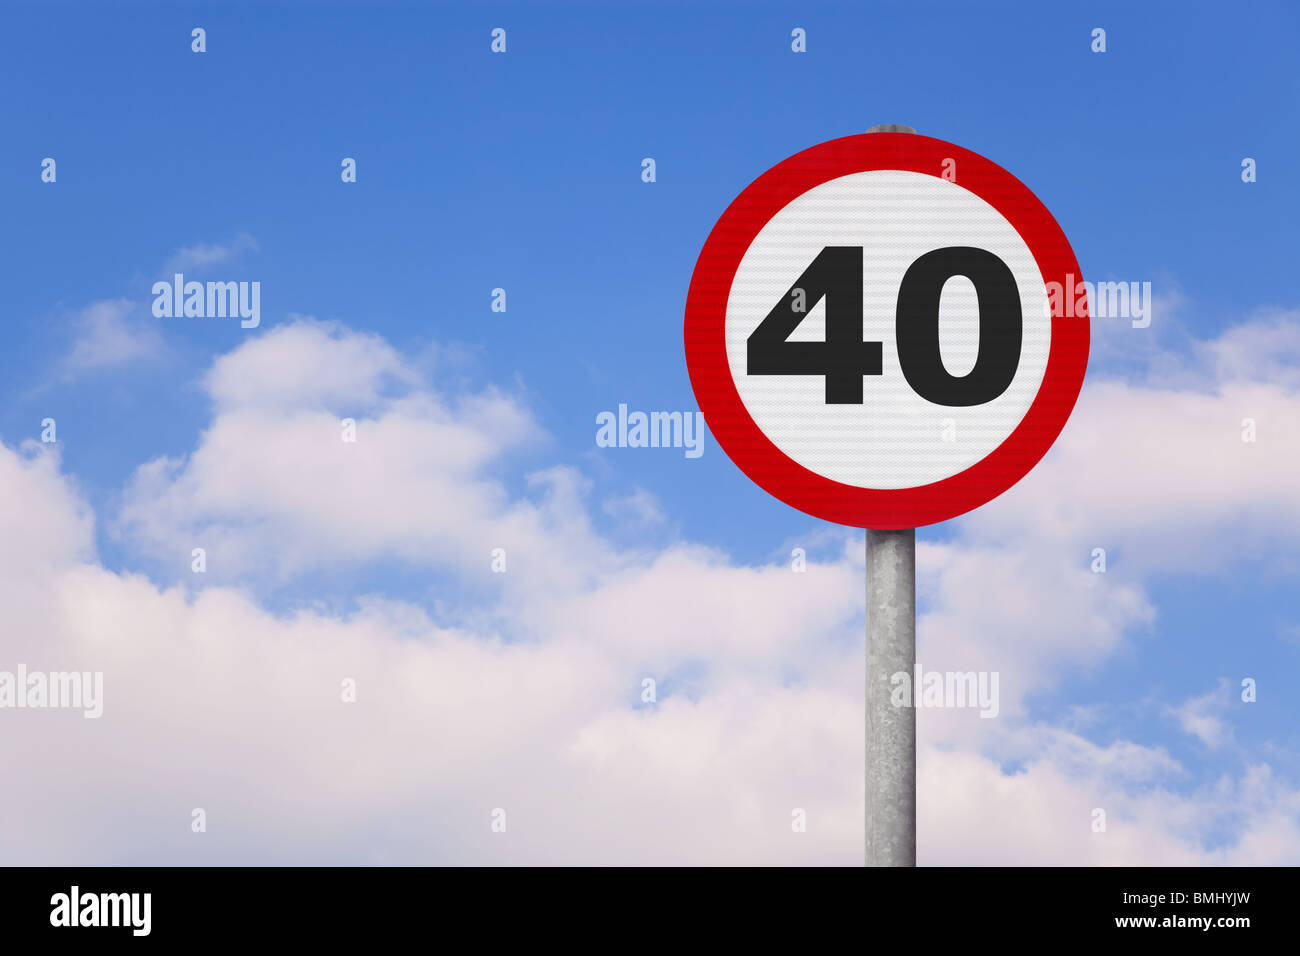 Una ronda roadsign con el número 40 en contra de un azul cielo nublado. Foto de stock